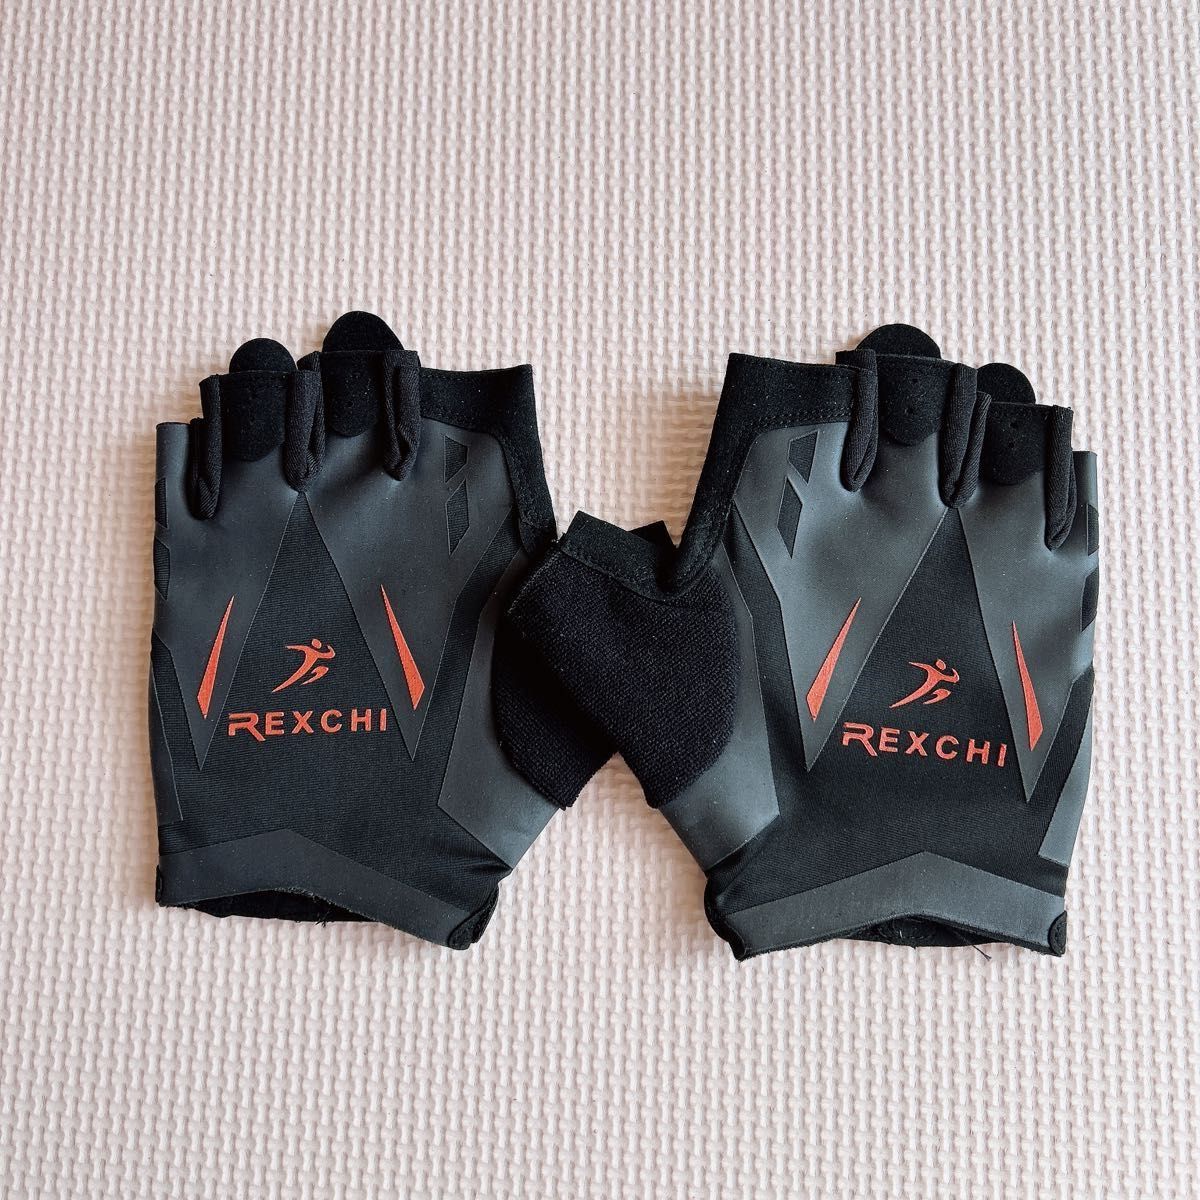 REXCHI グローブ トレーニング用 男女兼用 重量挙げ 手首保護 滑り止め 通気性 マジックテープ